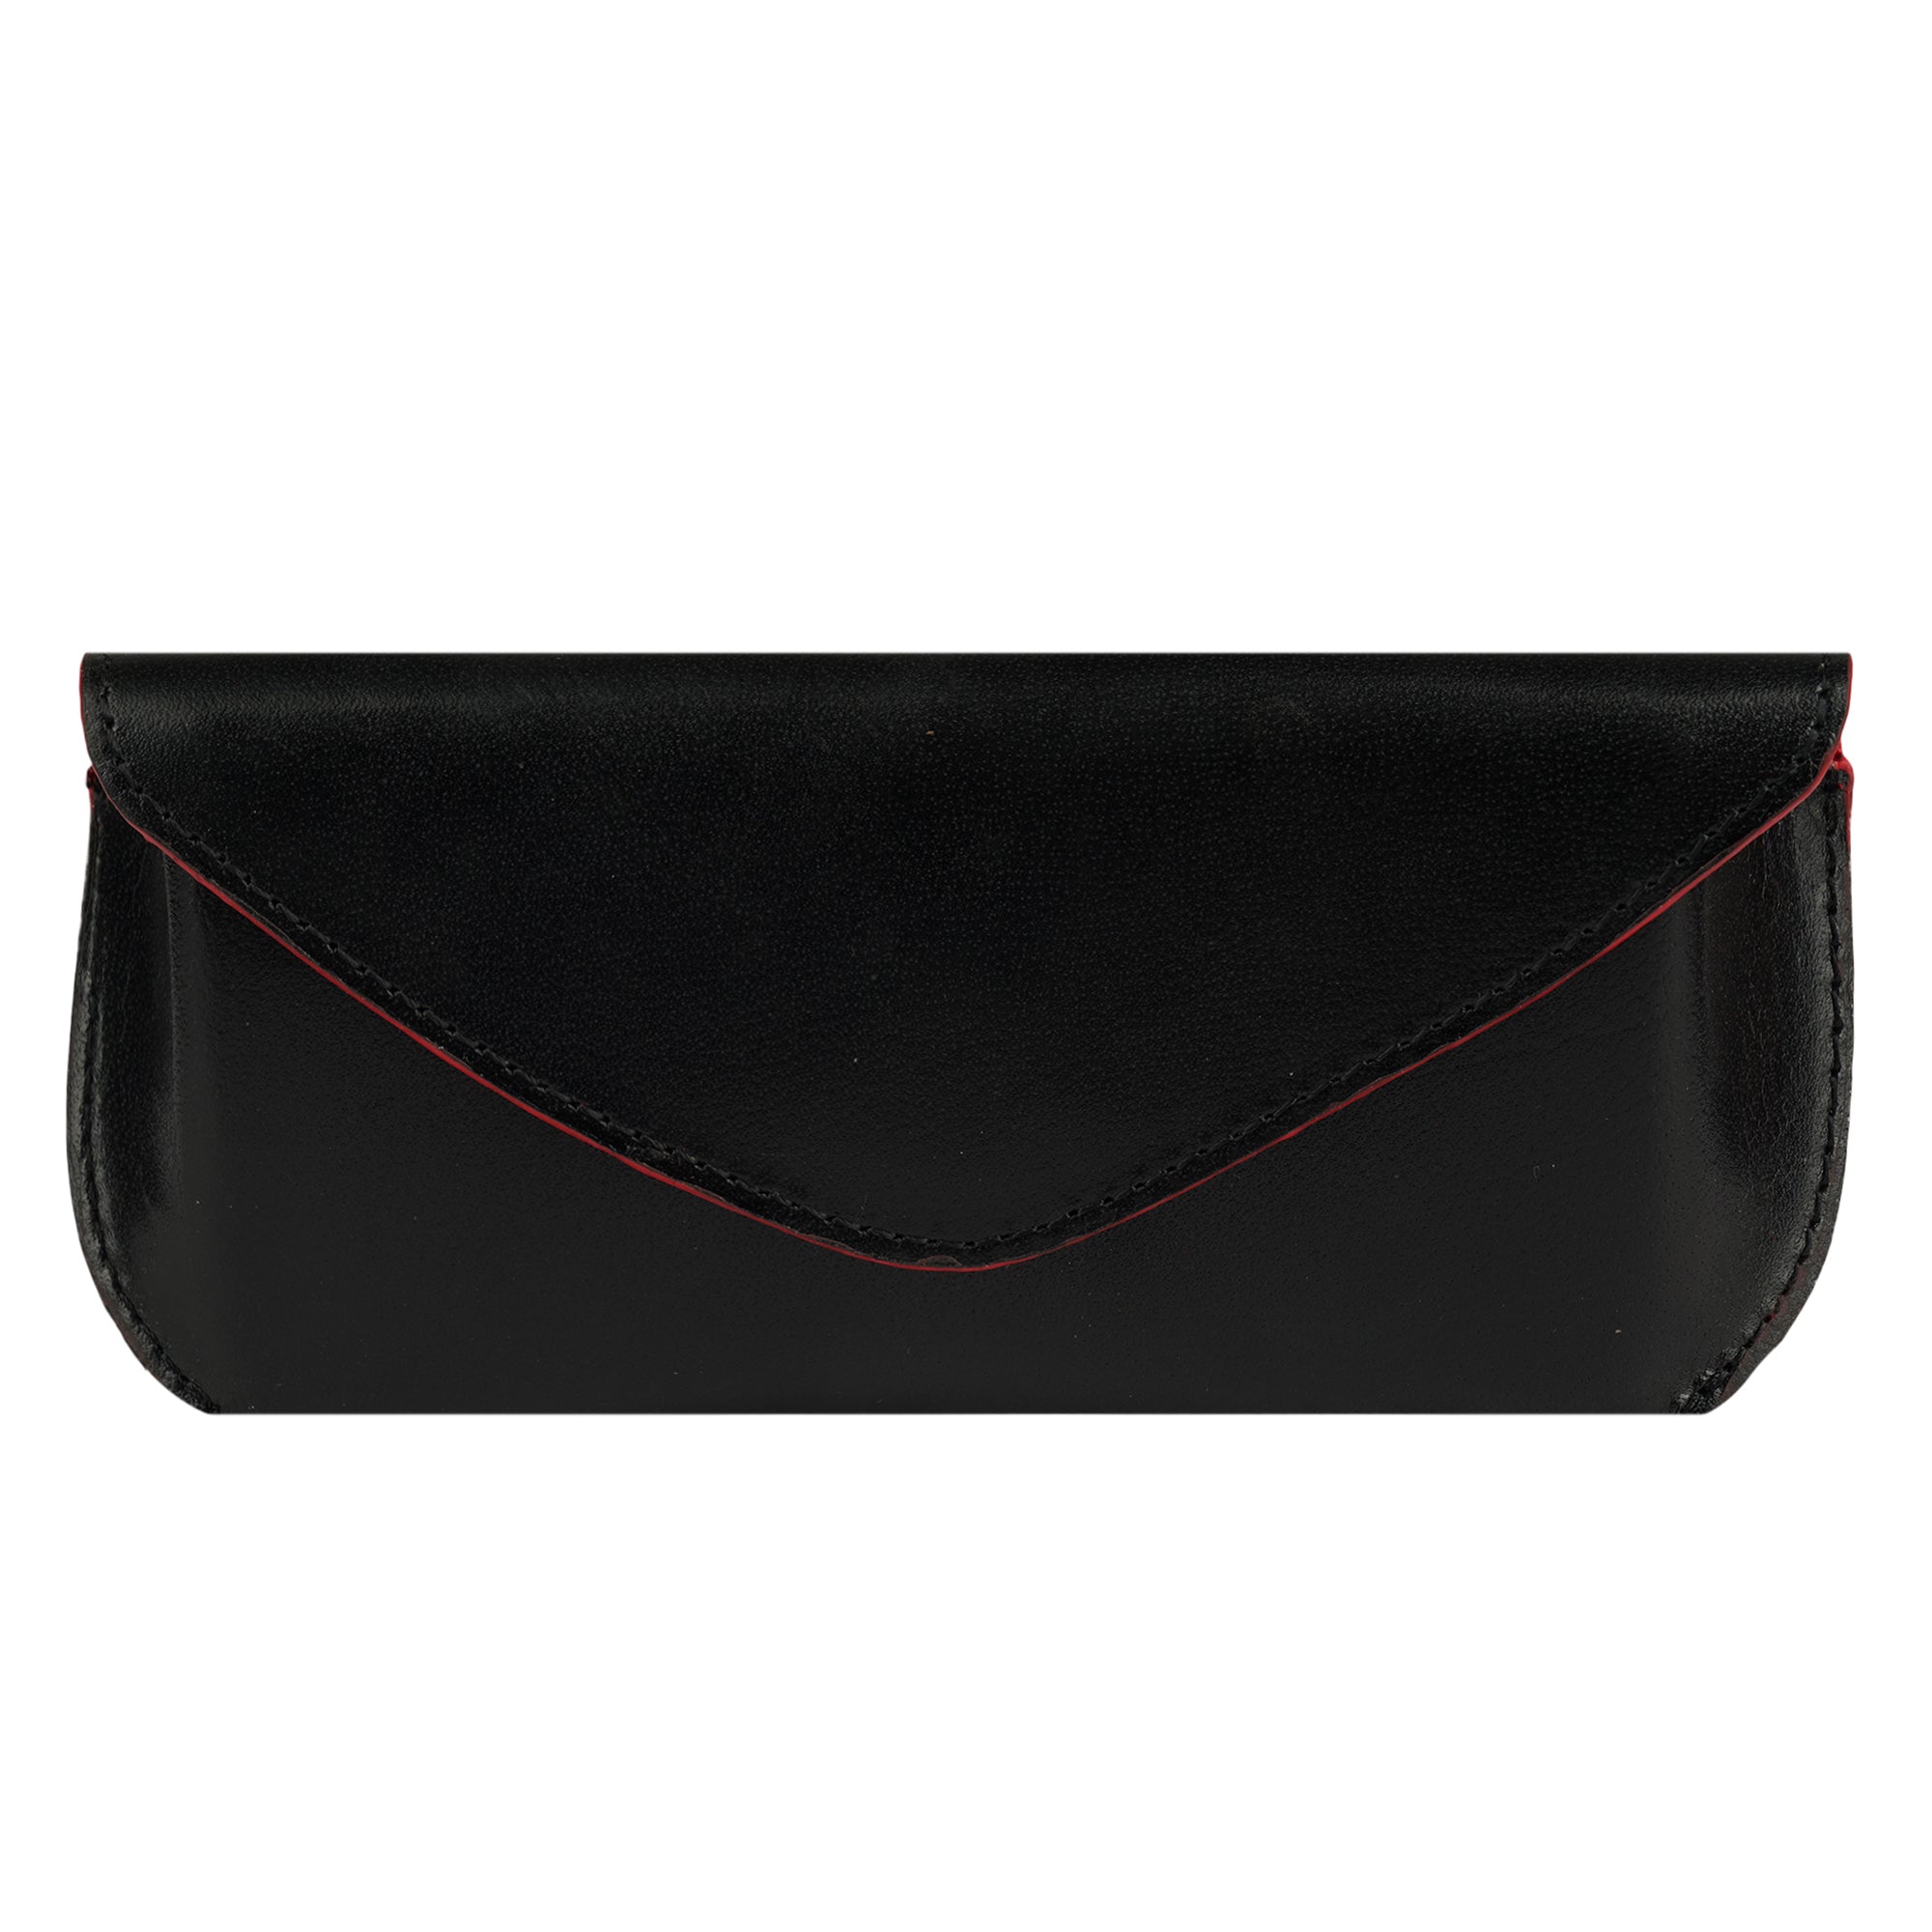 Premium Luxury Leather Cases Black Color